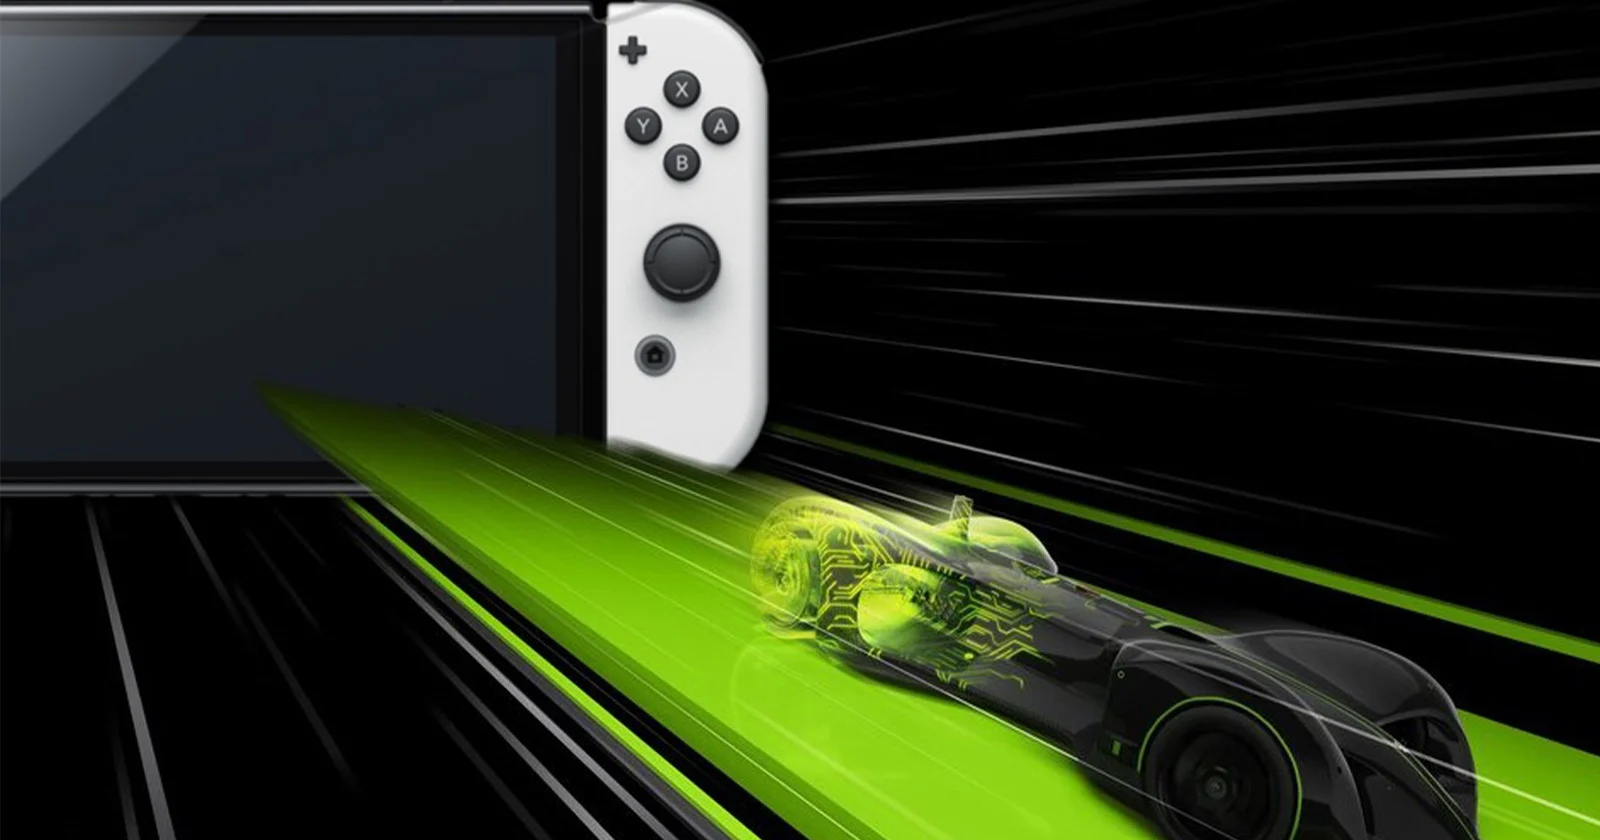 Карманная консоль Nintendo Switch 2 получит эксклюзивную версию NVIDIA DLSS, которой нет на других видеокартах компании